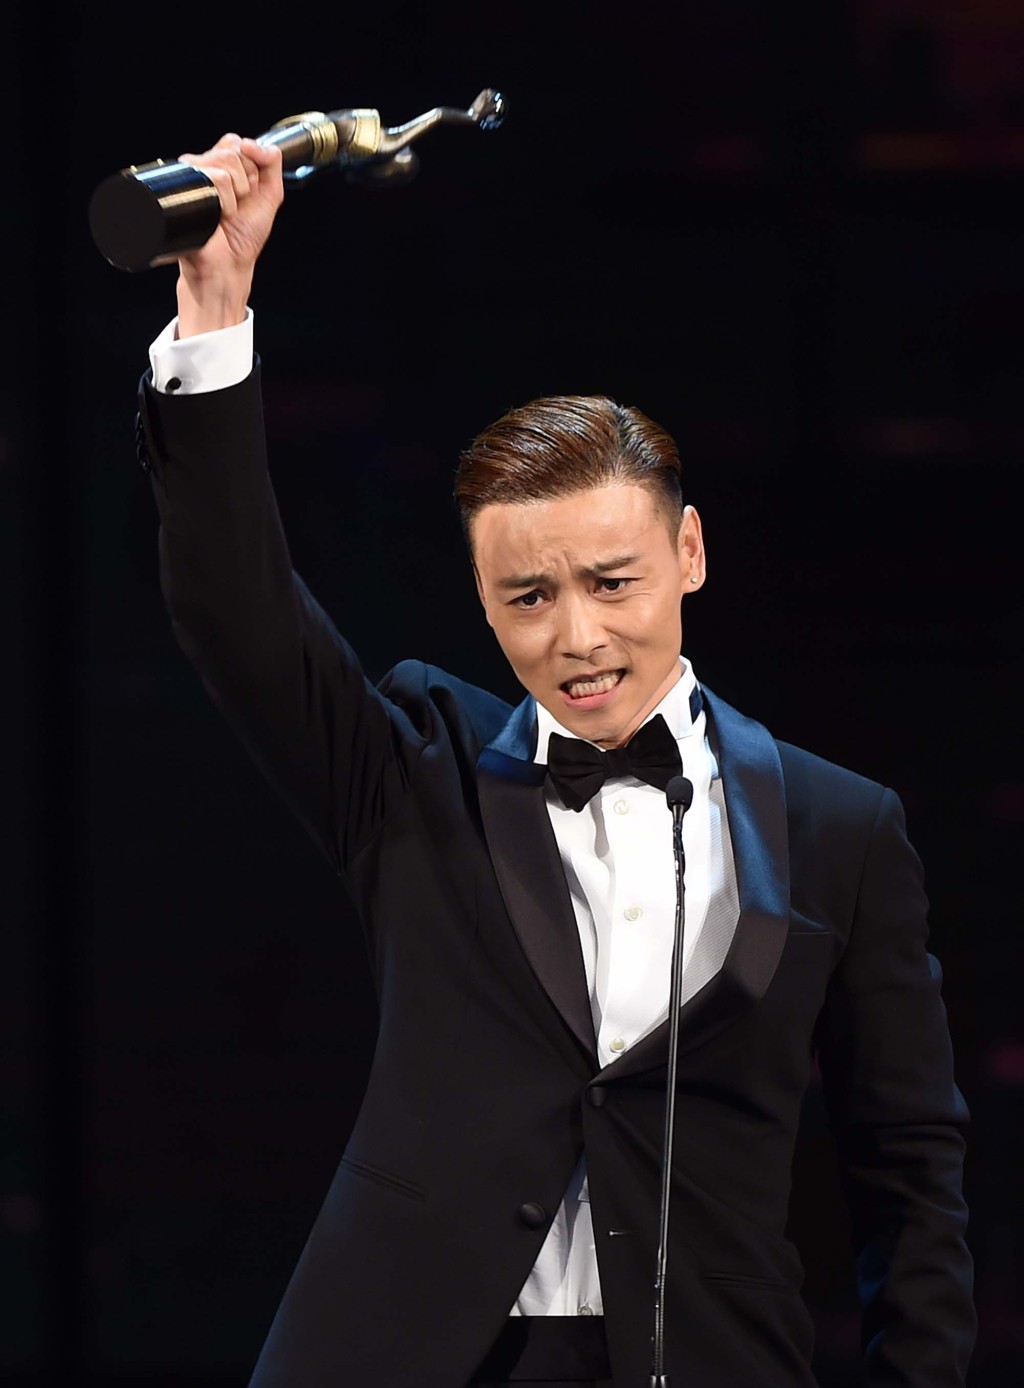 張晉曾勇奪第33屆香港金像獎最佳男配角。